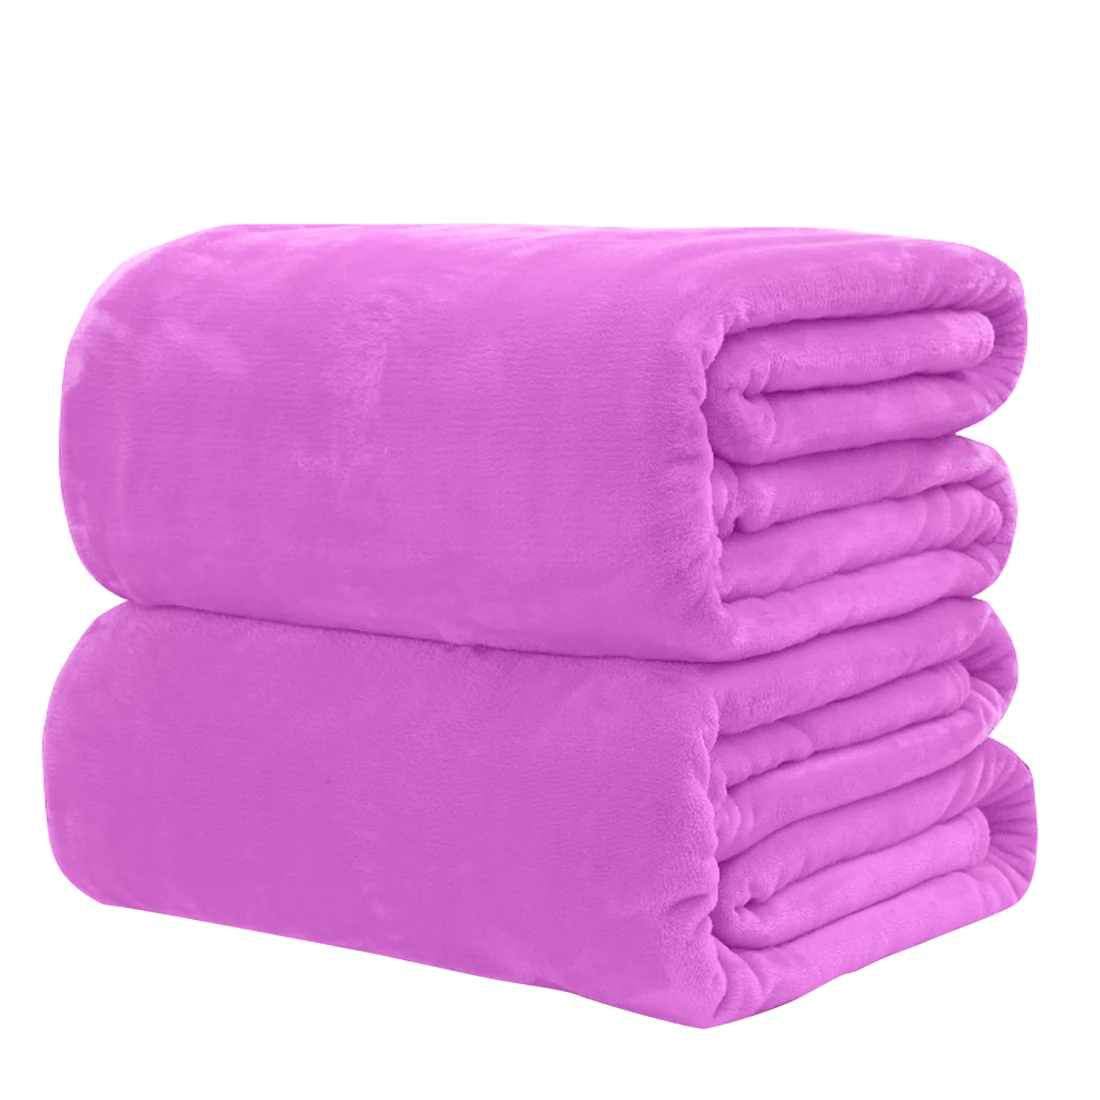 Однотонное маленькое супер мягкое одеяло, теплое однотонное теплое микро плюшевое Флисовое одеяло, плед, диван, постельные принадлежности для дома, офиса, путешествий - Цвет: purple